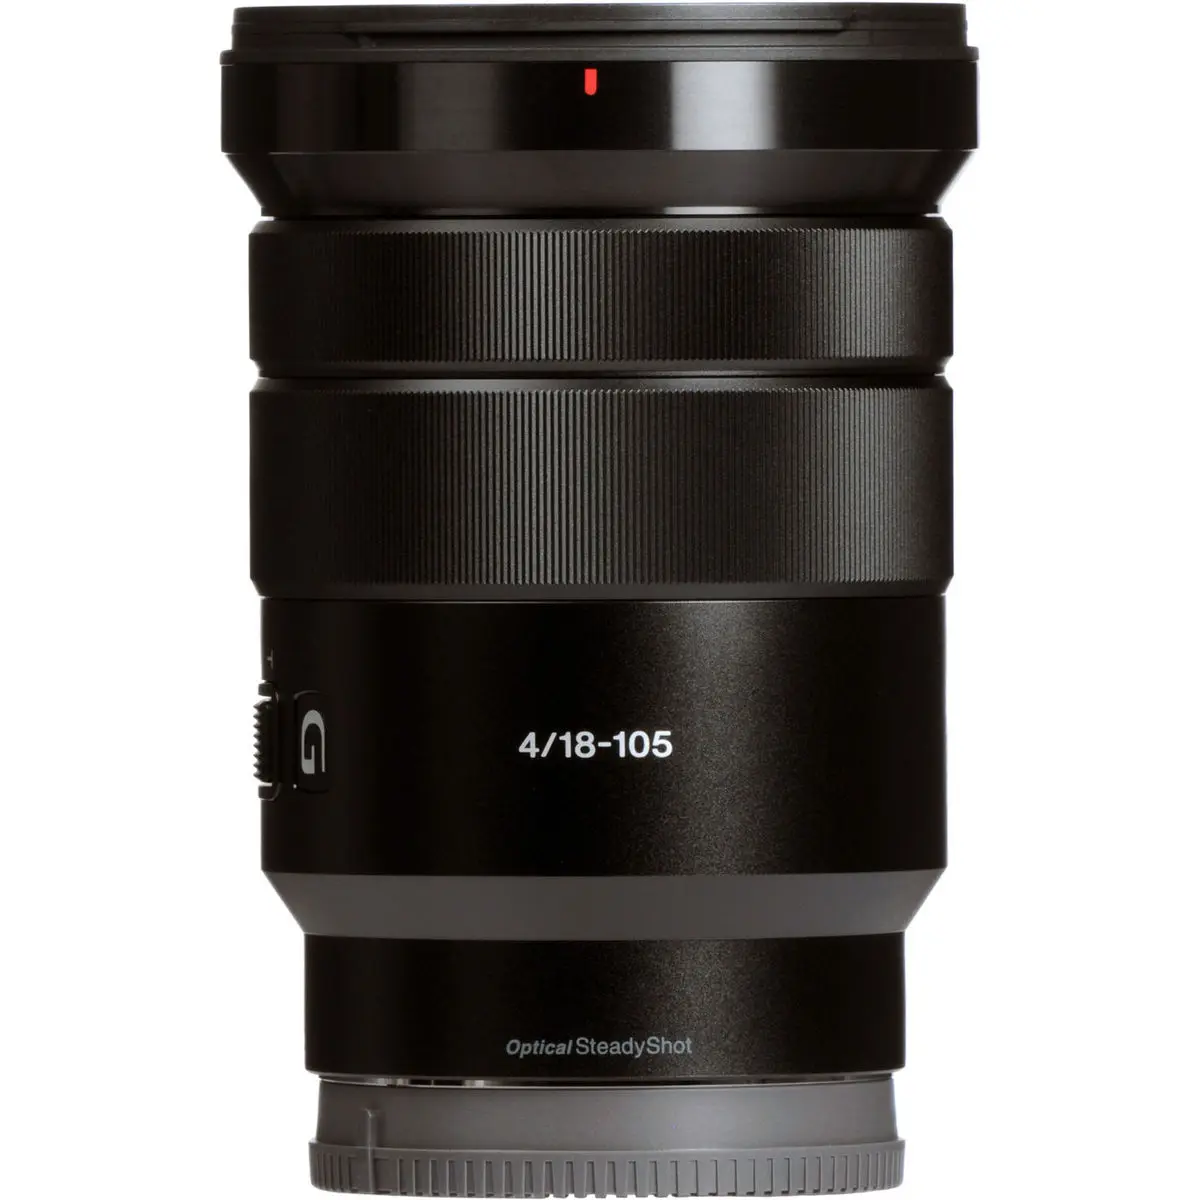 3. Sony E PZ 18-105mm F4 G OSS Lens SELP18105G E-Mount APS-C Format